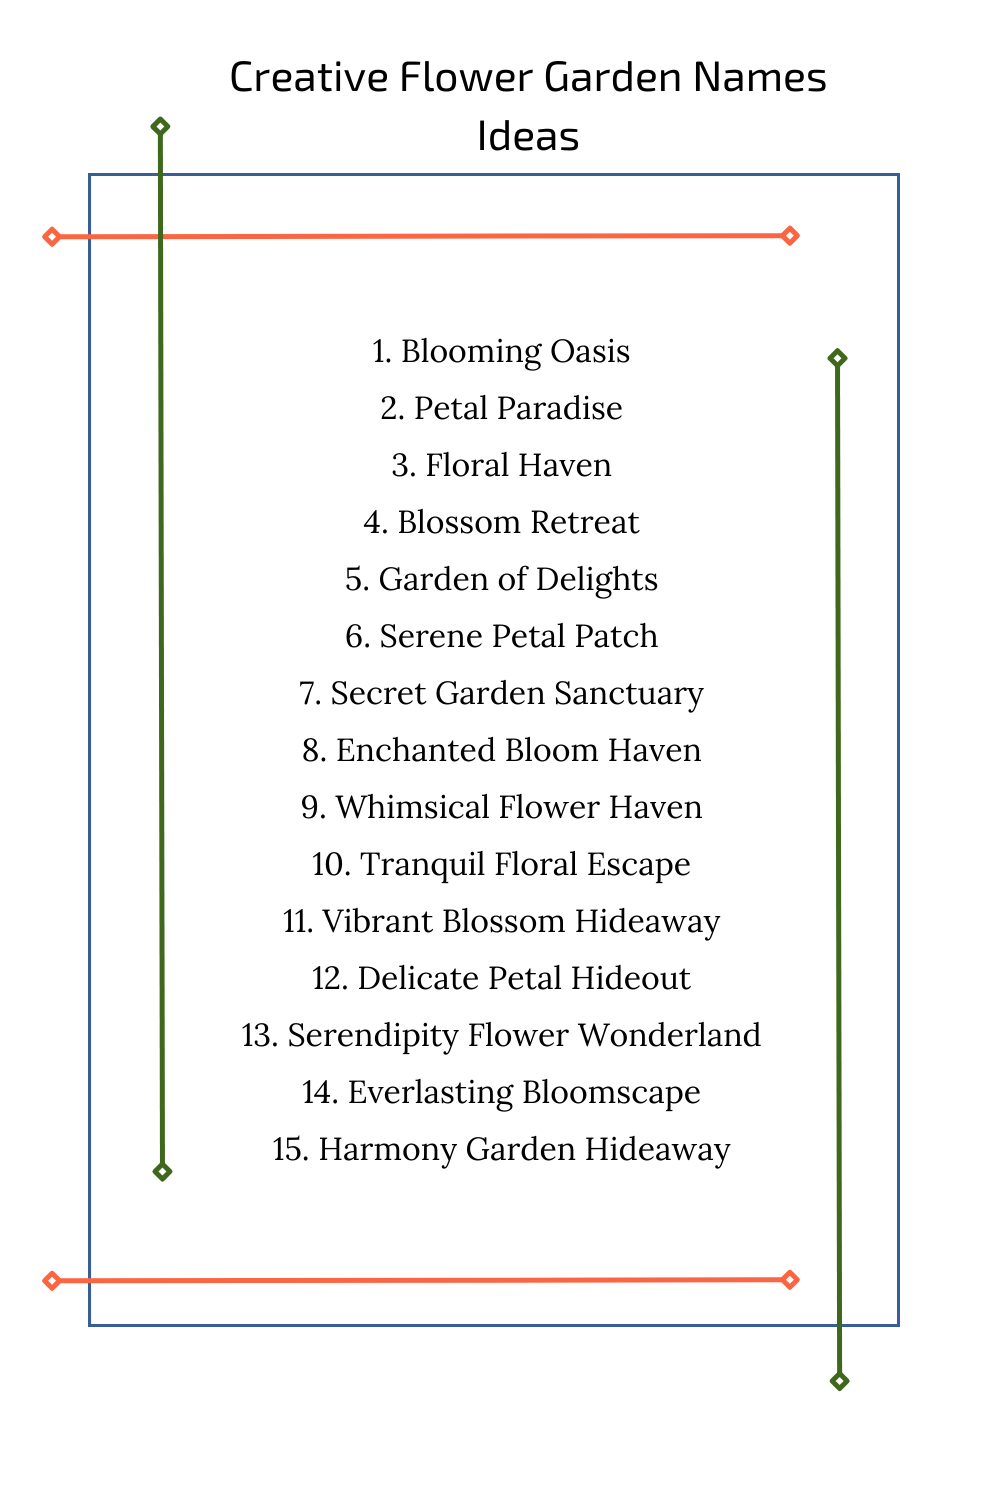 Creative Flower Garden Names Ideas